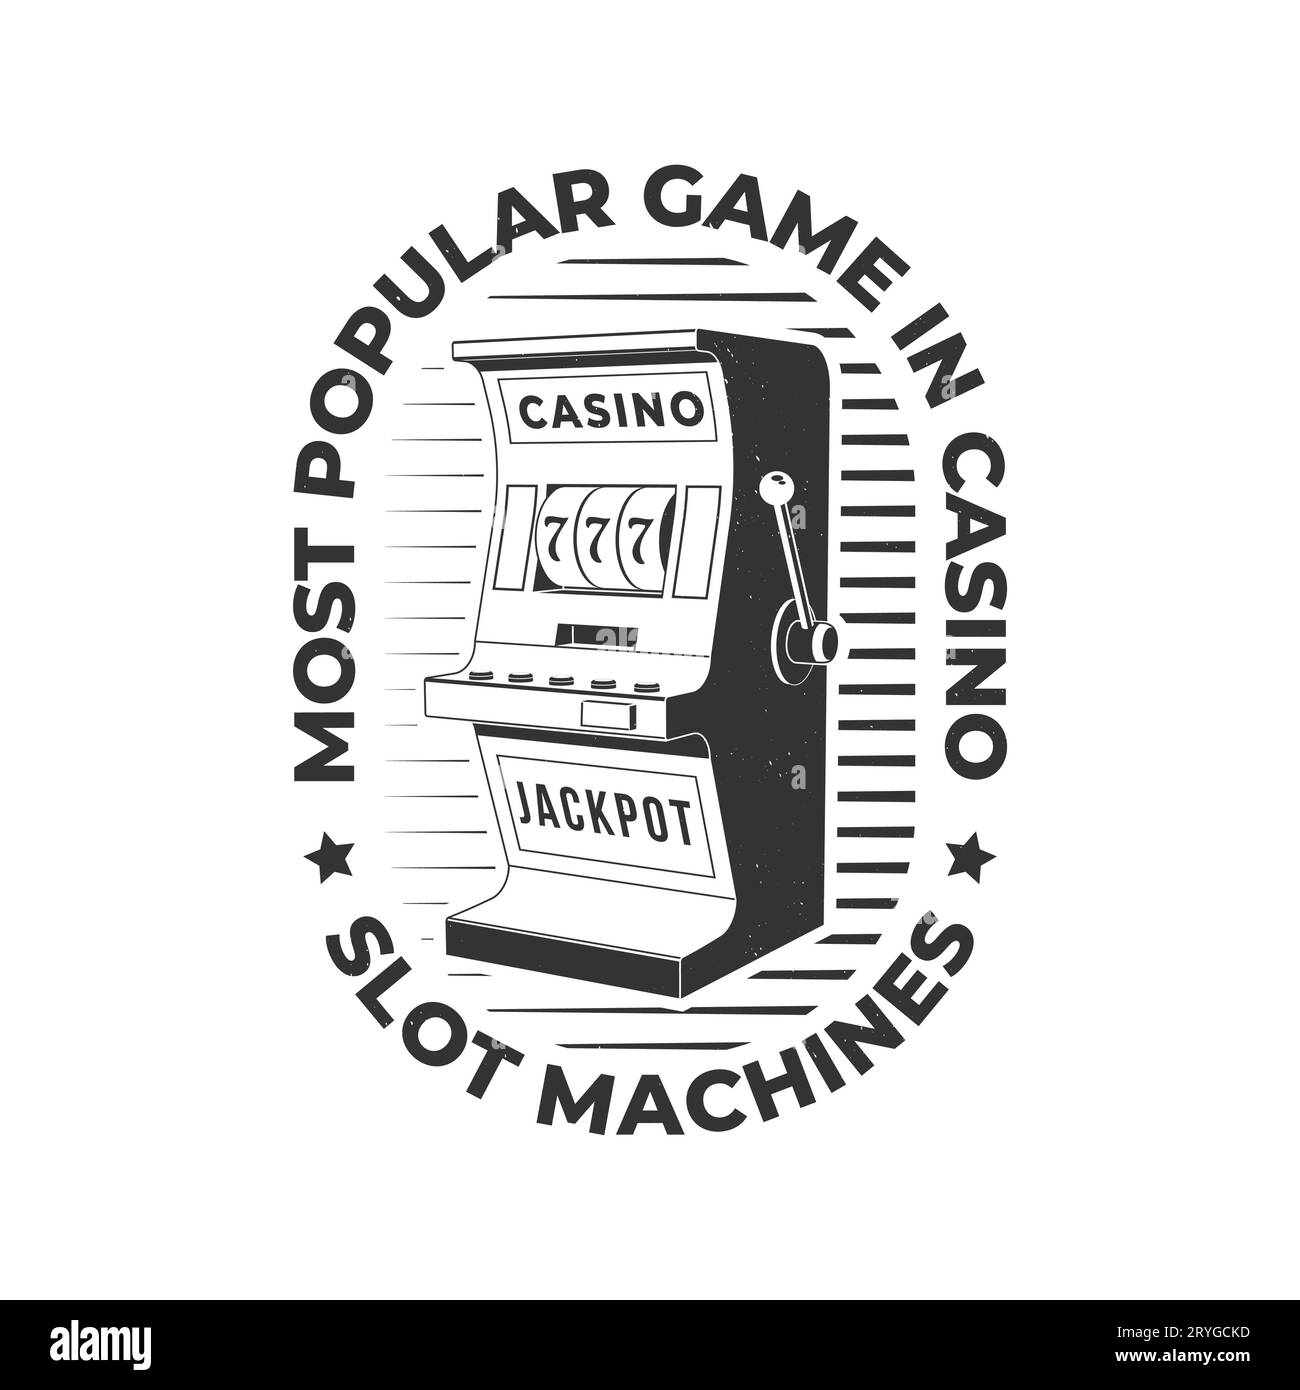 Beliebtestes Spiel im Casino, Spielautomaten. Logo-, Druck- und Abzeichen-Design mit Silhouette von Spielautomaten. Vektorillustration. Casino-Spielautomat Stock Vektor